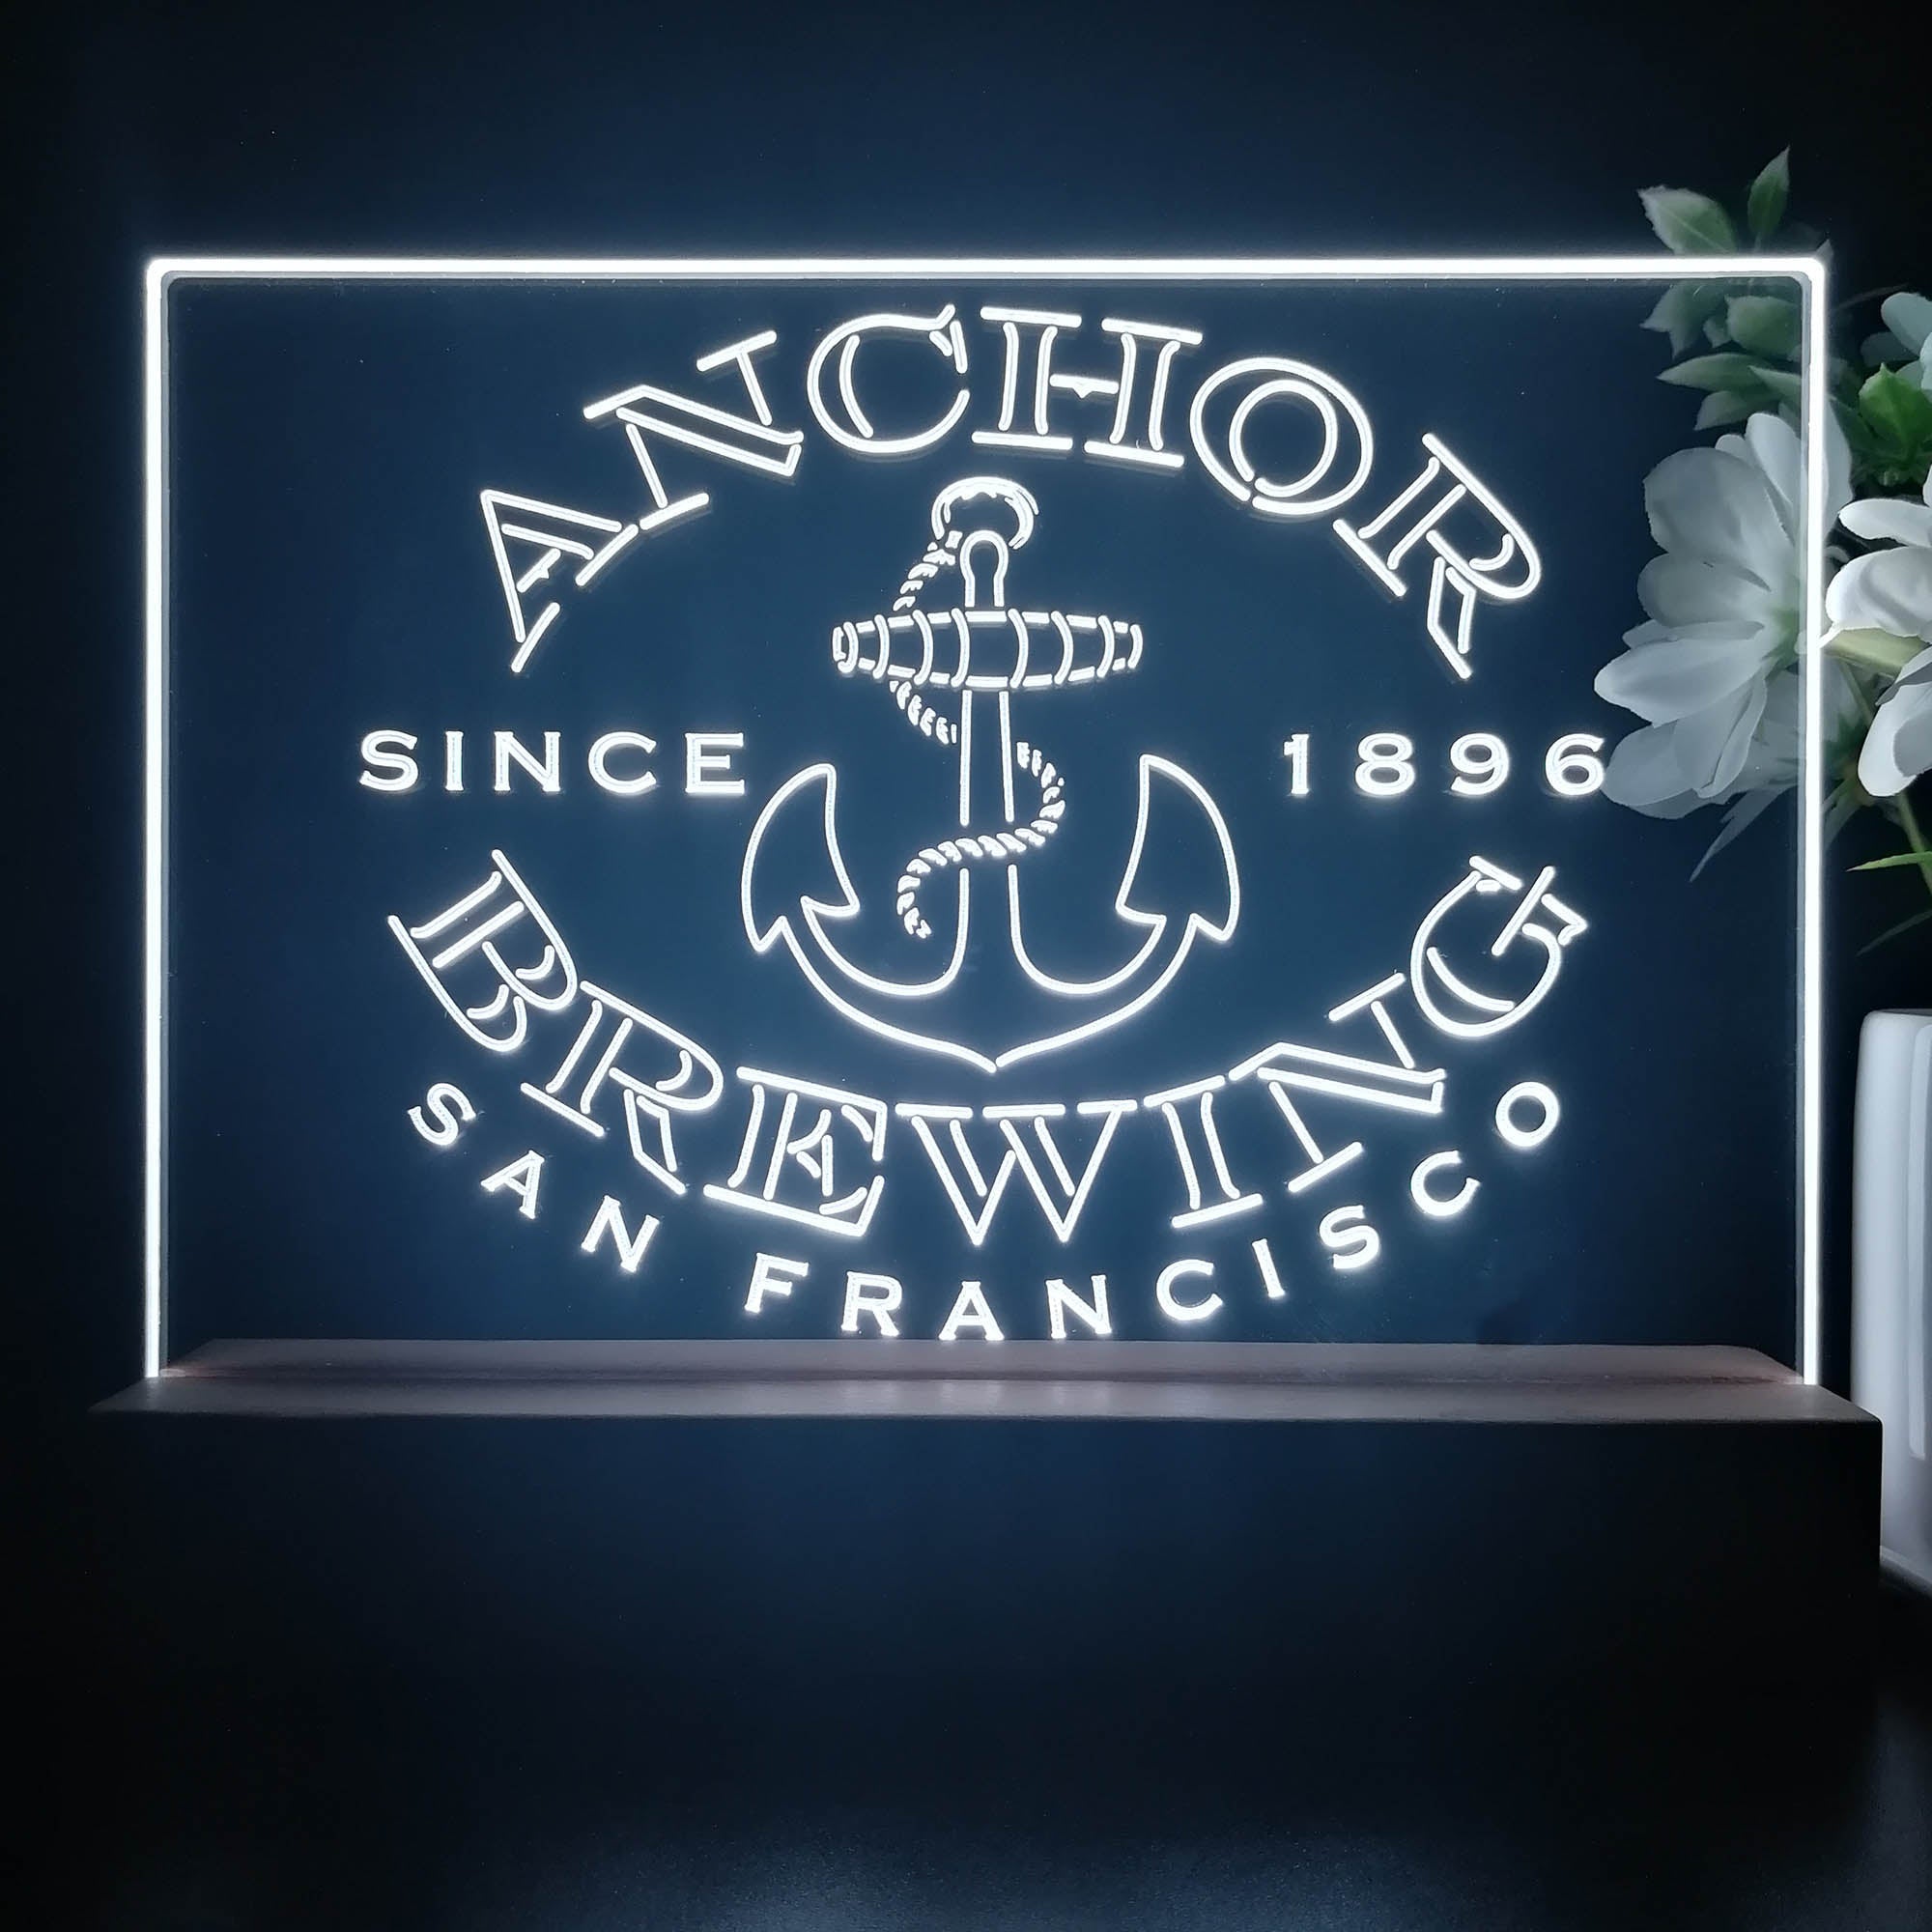 Anchor Brewing Co. Neon Sign Pub Bar Decor Lamp